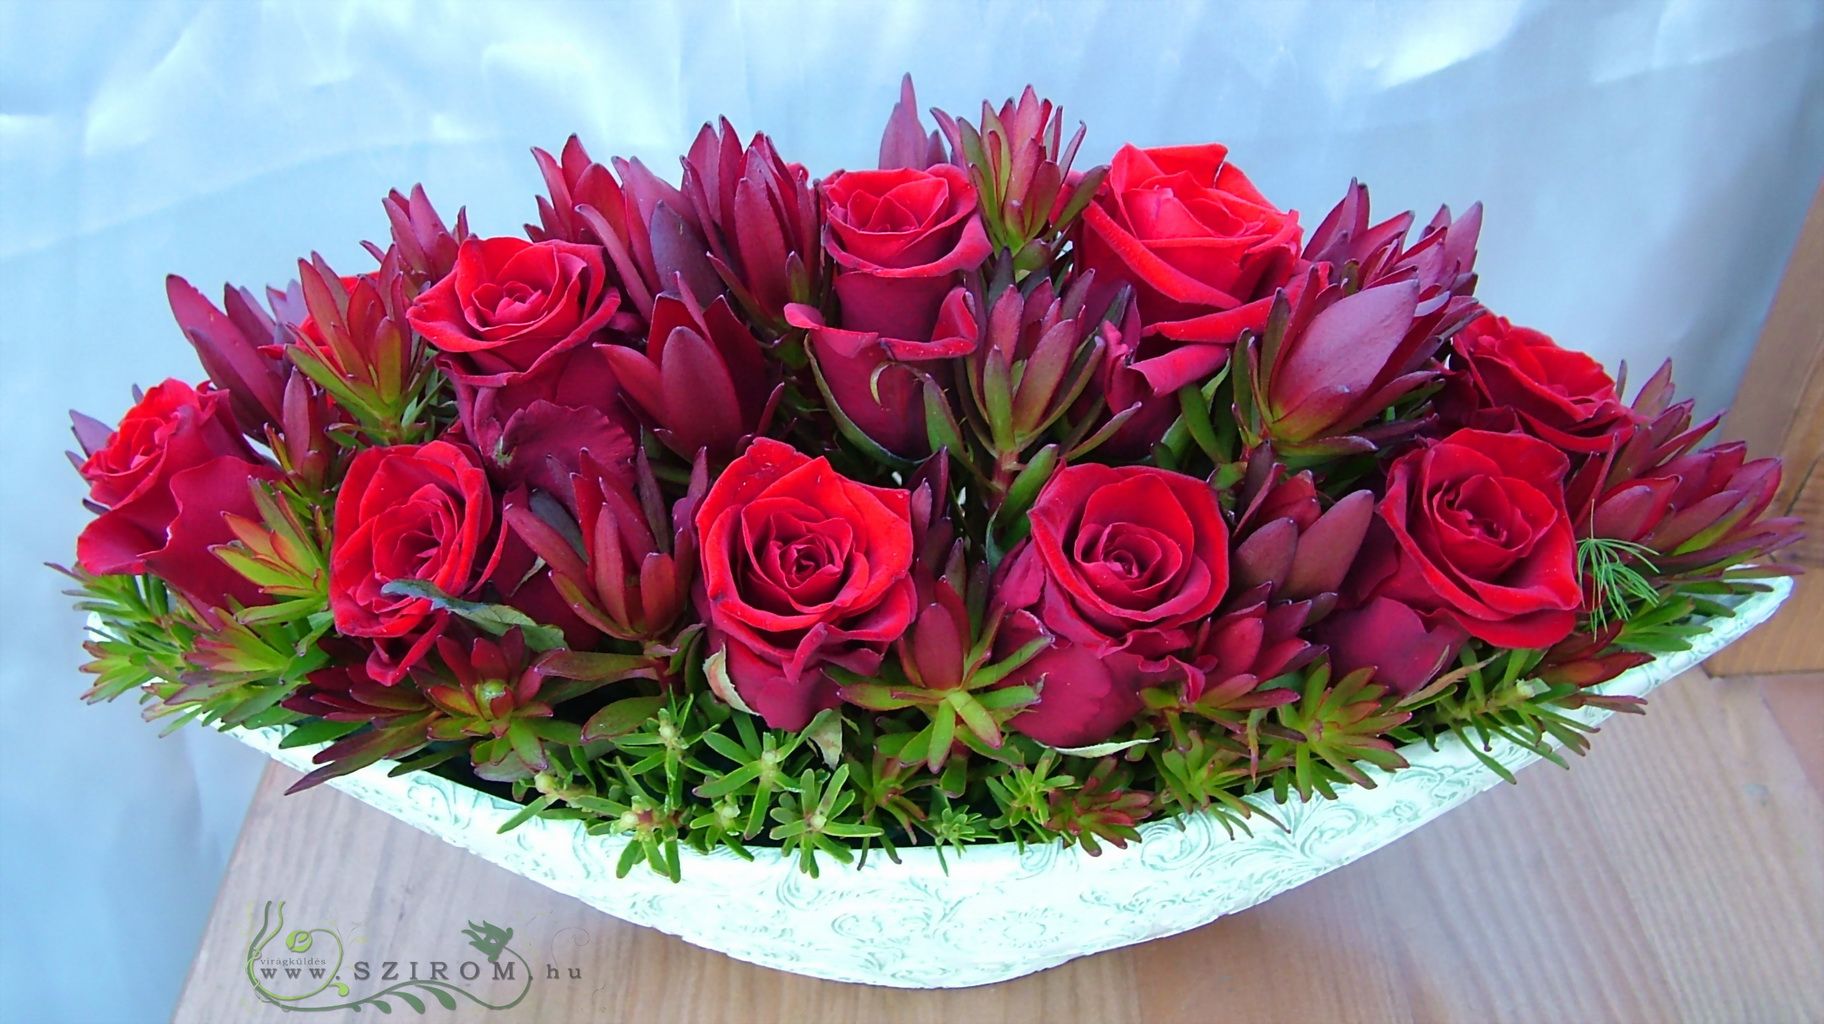 Főasztaldísz (rózsa, leukadendron, vörös ), esküvő